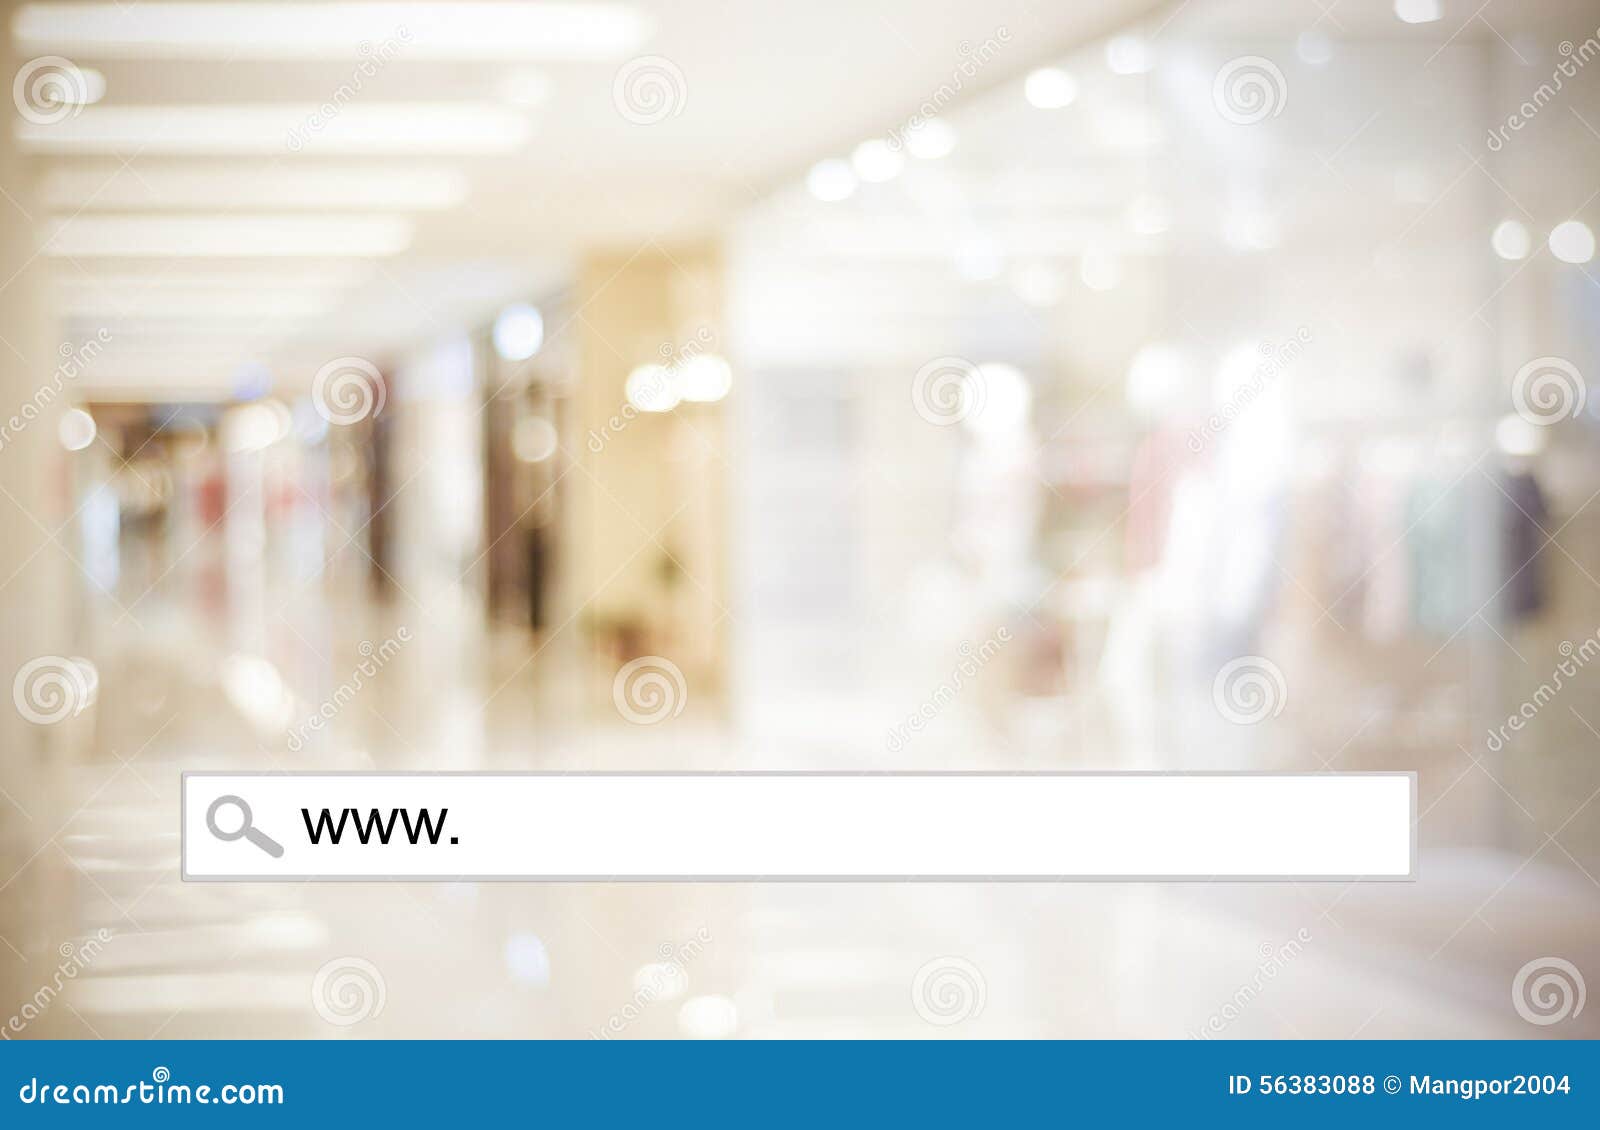 Người tiêu dùng luôn tìm kiếm những trải nghiệm mua sắm trực tuyến độc đáo. Cửa hàng mờ với ánh sáng bokeh sẽ làm cho việc chọn mua sản phẩm trở nên lãng mạn và bắt mắt hơn. Với một nhấp chuột đơn giản, bạn có thể trải nghiệm trực tuyến các cửa hàng độc đáo này.